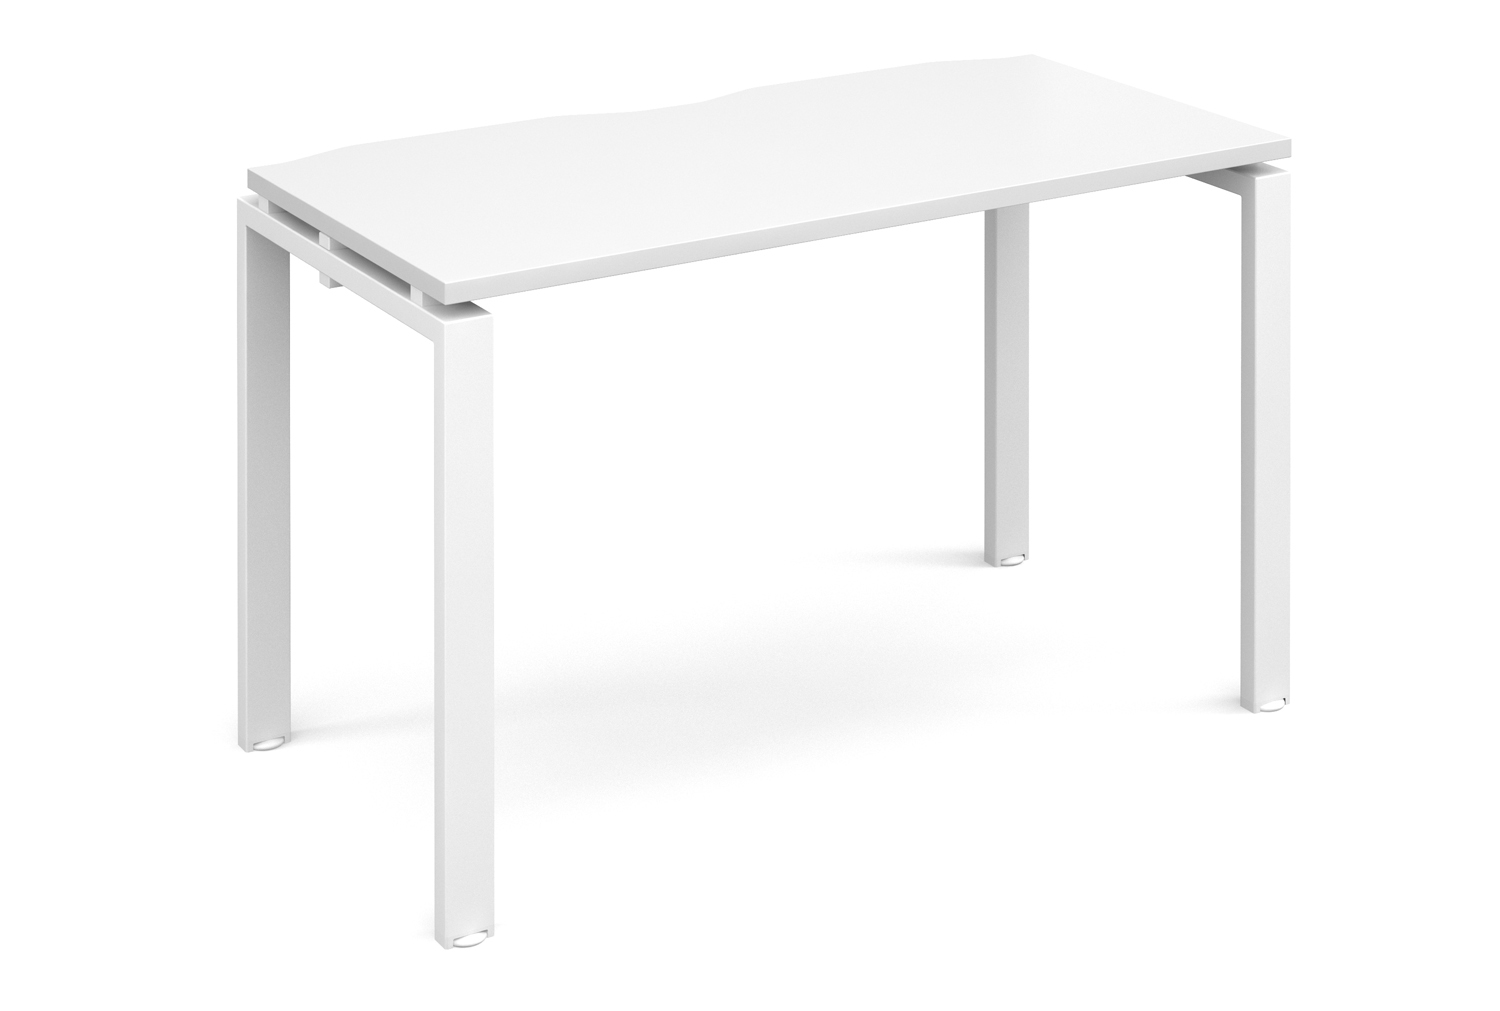 Prime Single Bench Narrow Office Desk (White Legs), 120w60dx73h (cm), White, Fully Installed